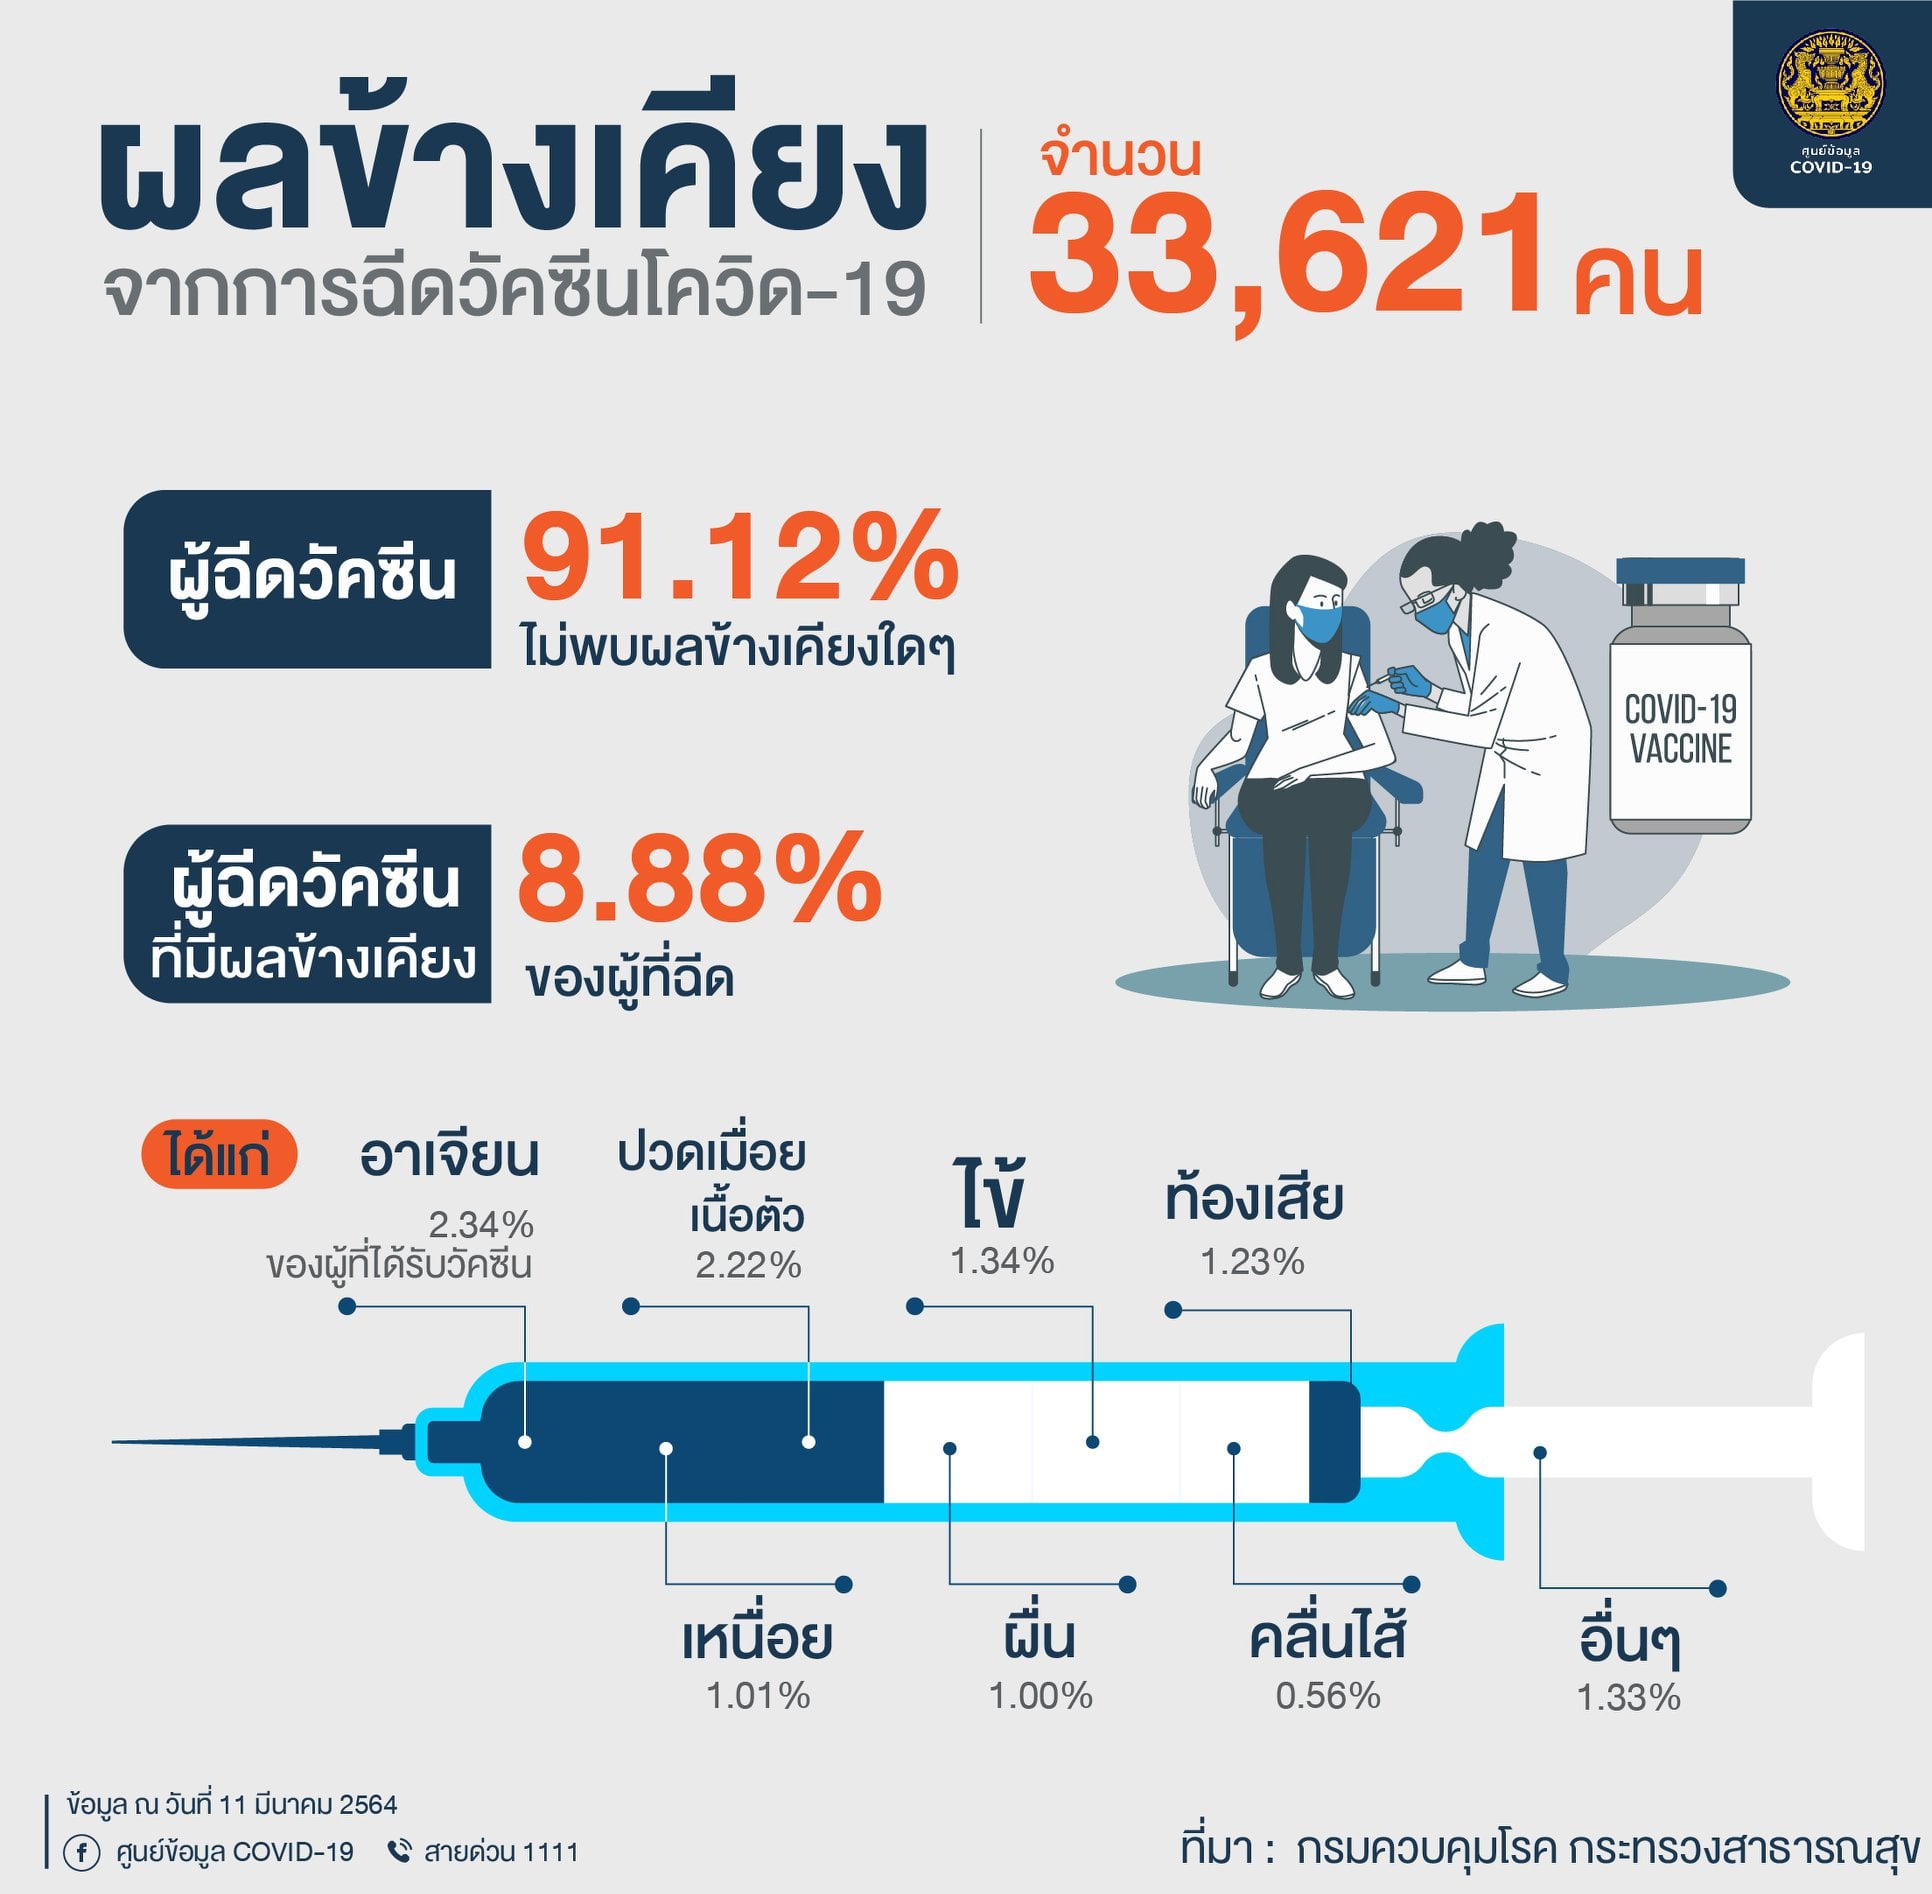 ผลข้างเคียงจากการฉีดวัคซีนโควิด-19 จำนวน 33,621 คน